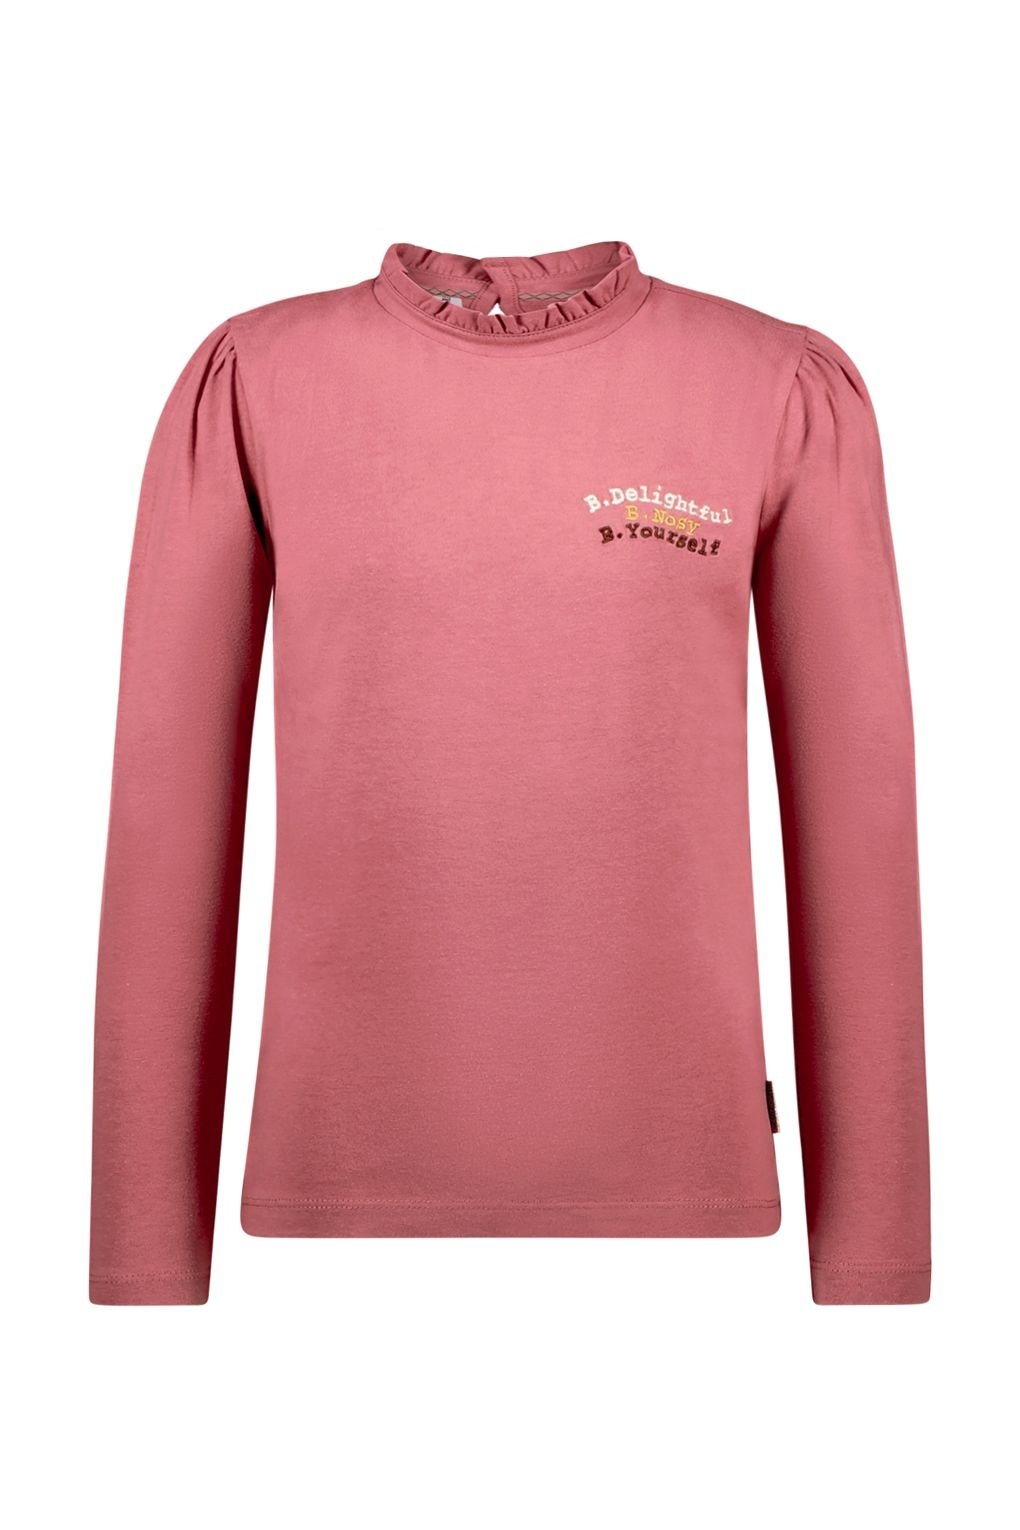 B.Nosy Meisjes shirt roze - Dura - Oud kersen